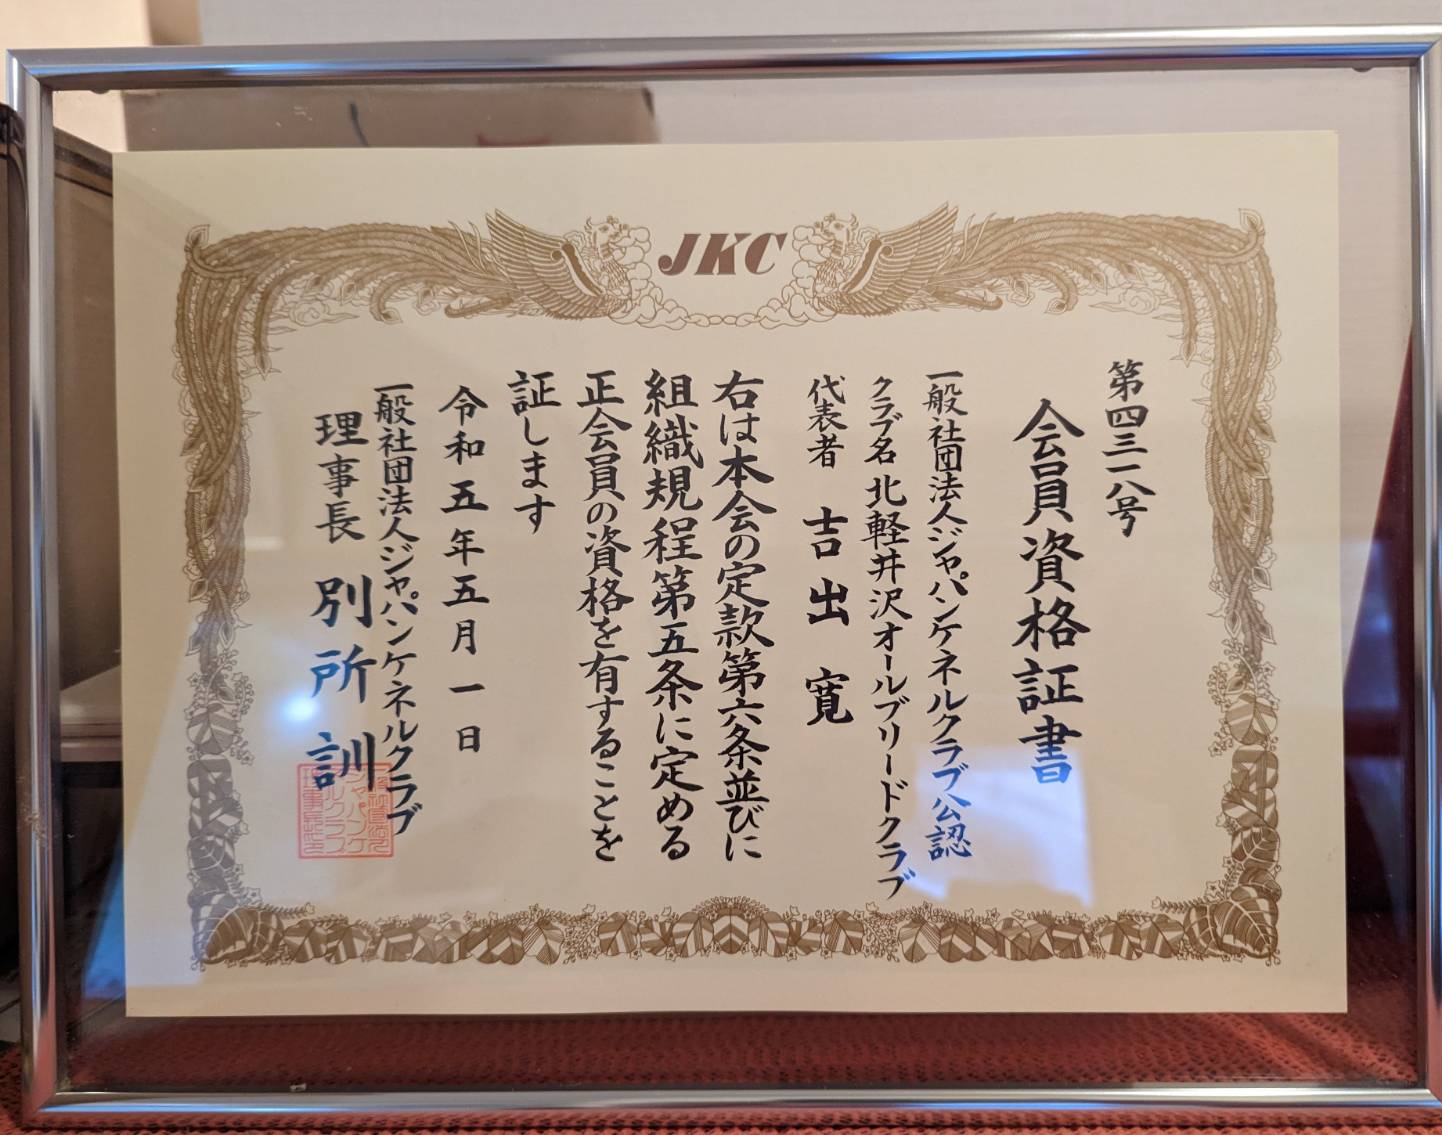 【JKC公認】北軽井沢オールブリードクラブを発足しました！